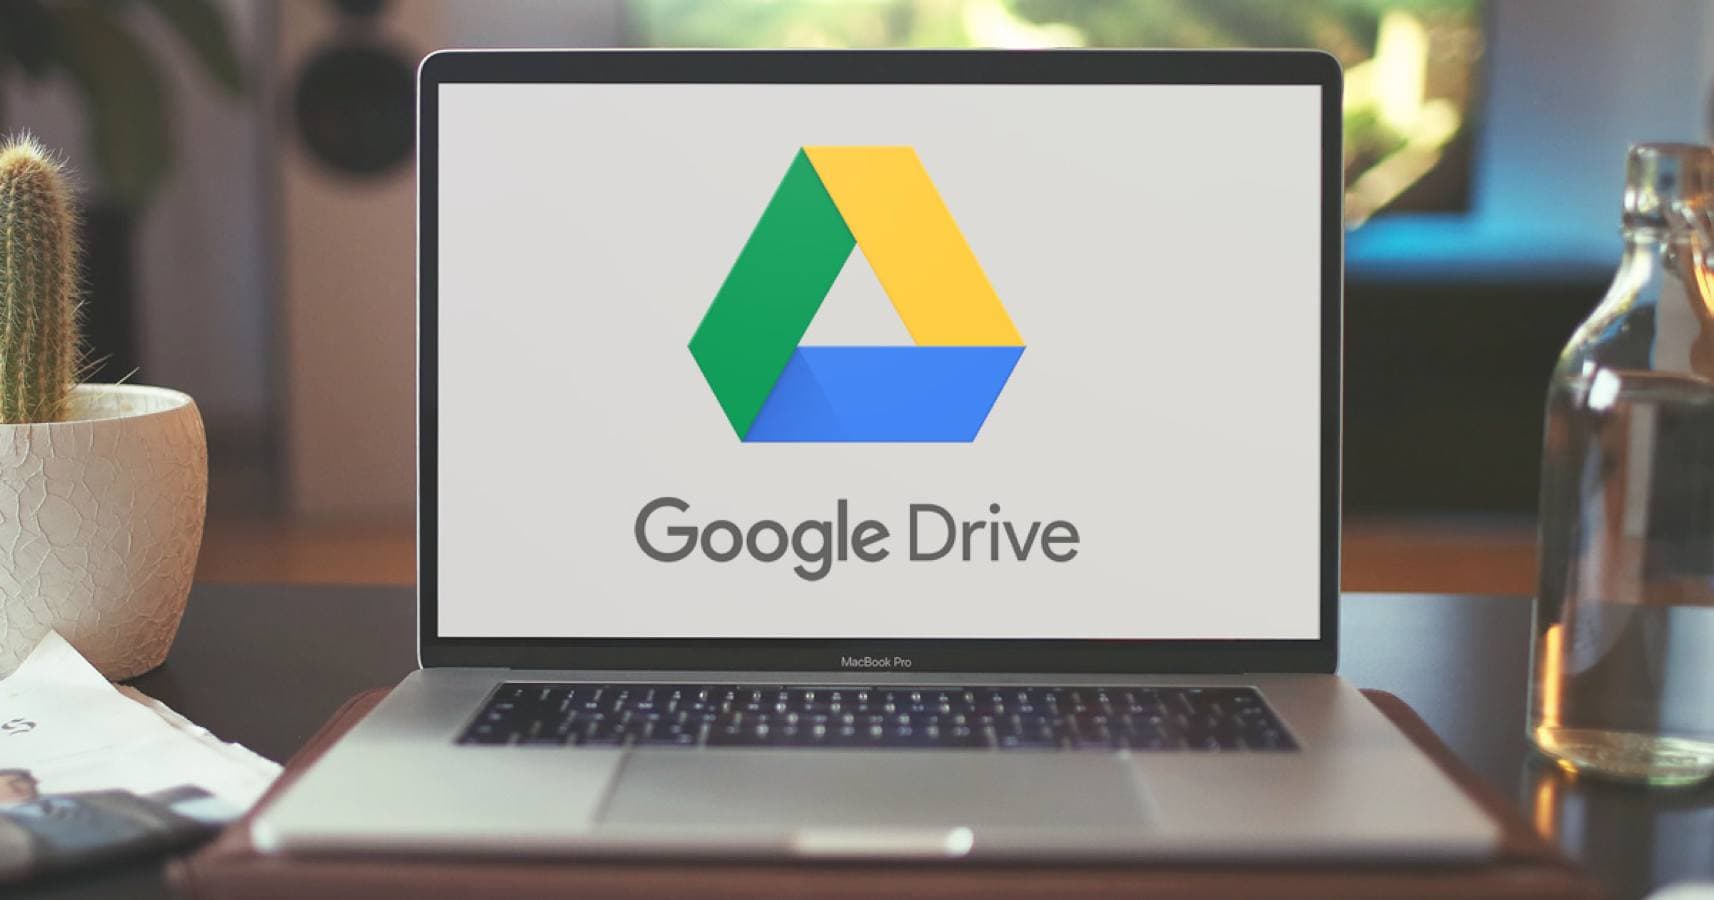 Falha no Google Drive apaga arquivos de diversos usuários sem aviso